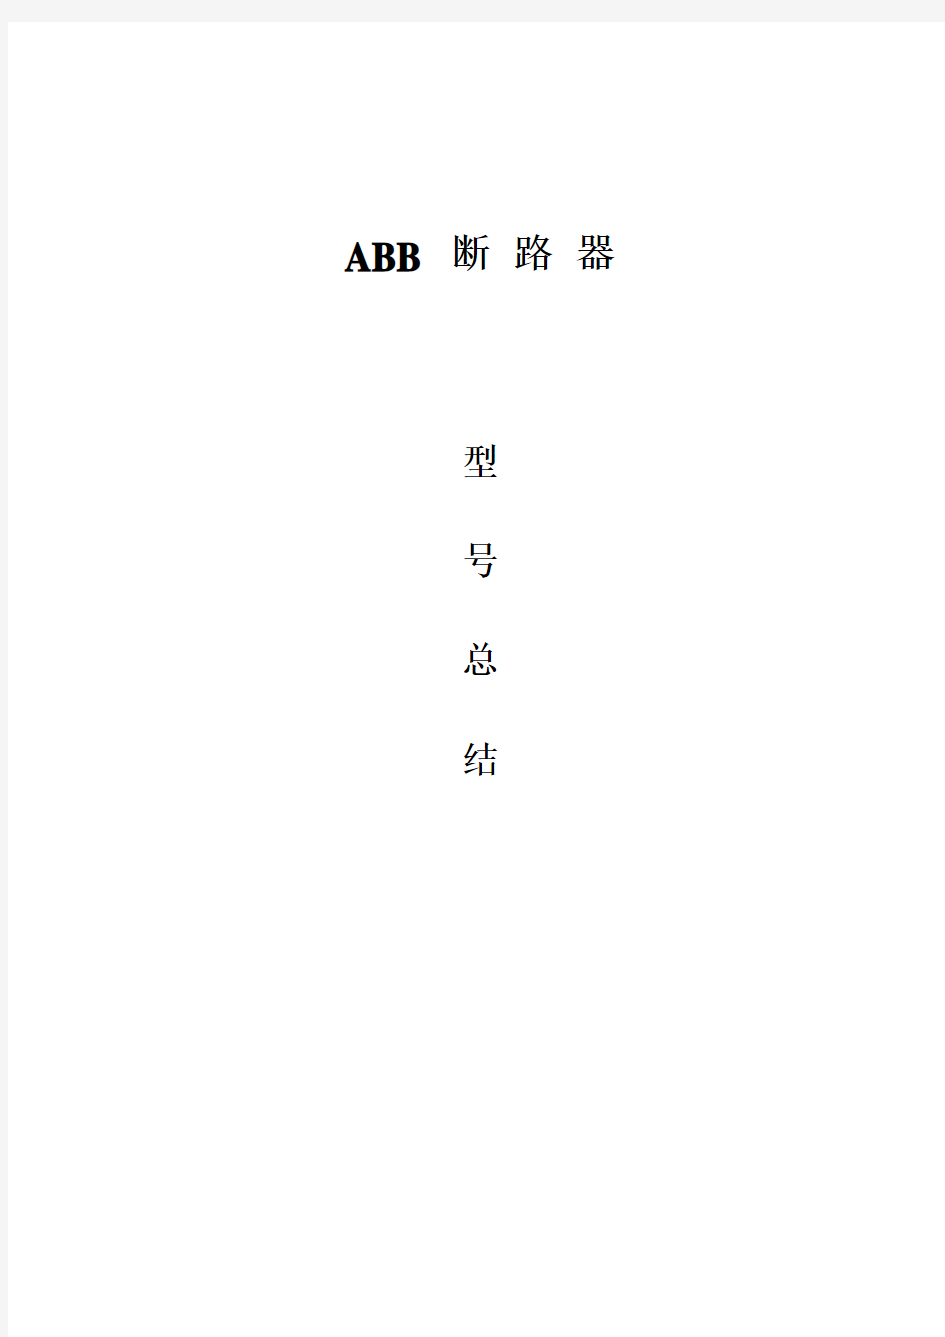 ABB大全(断路器)-001-2012年